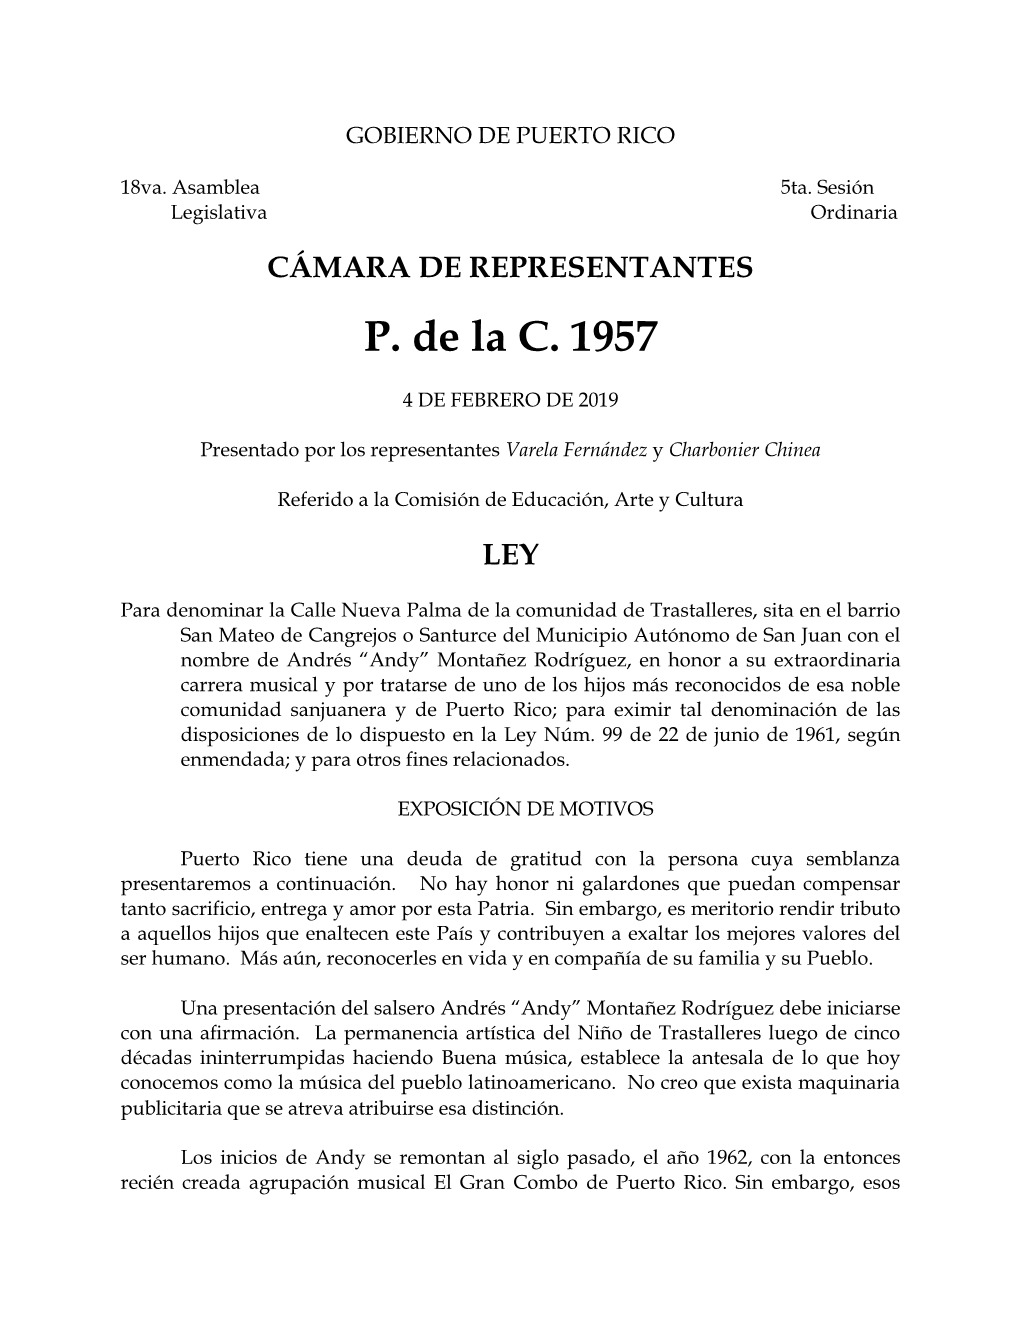 CÁMARA DE REPRESENTANTES P. De La C. 1957